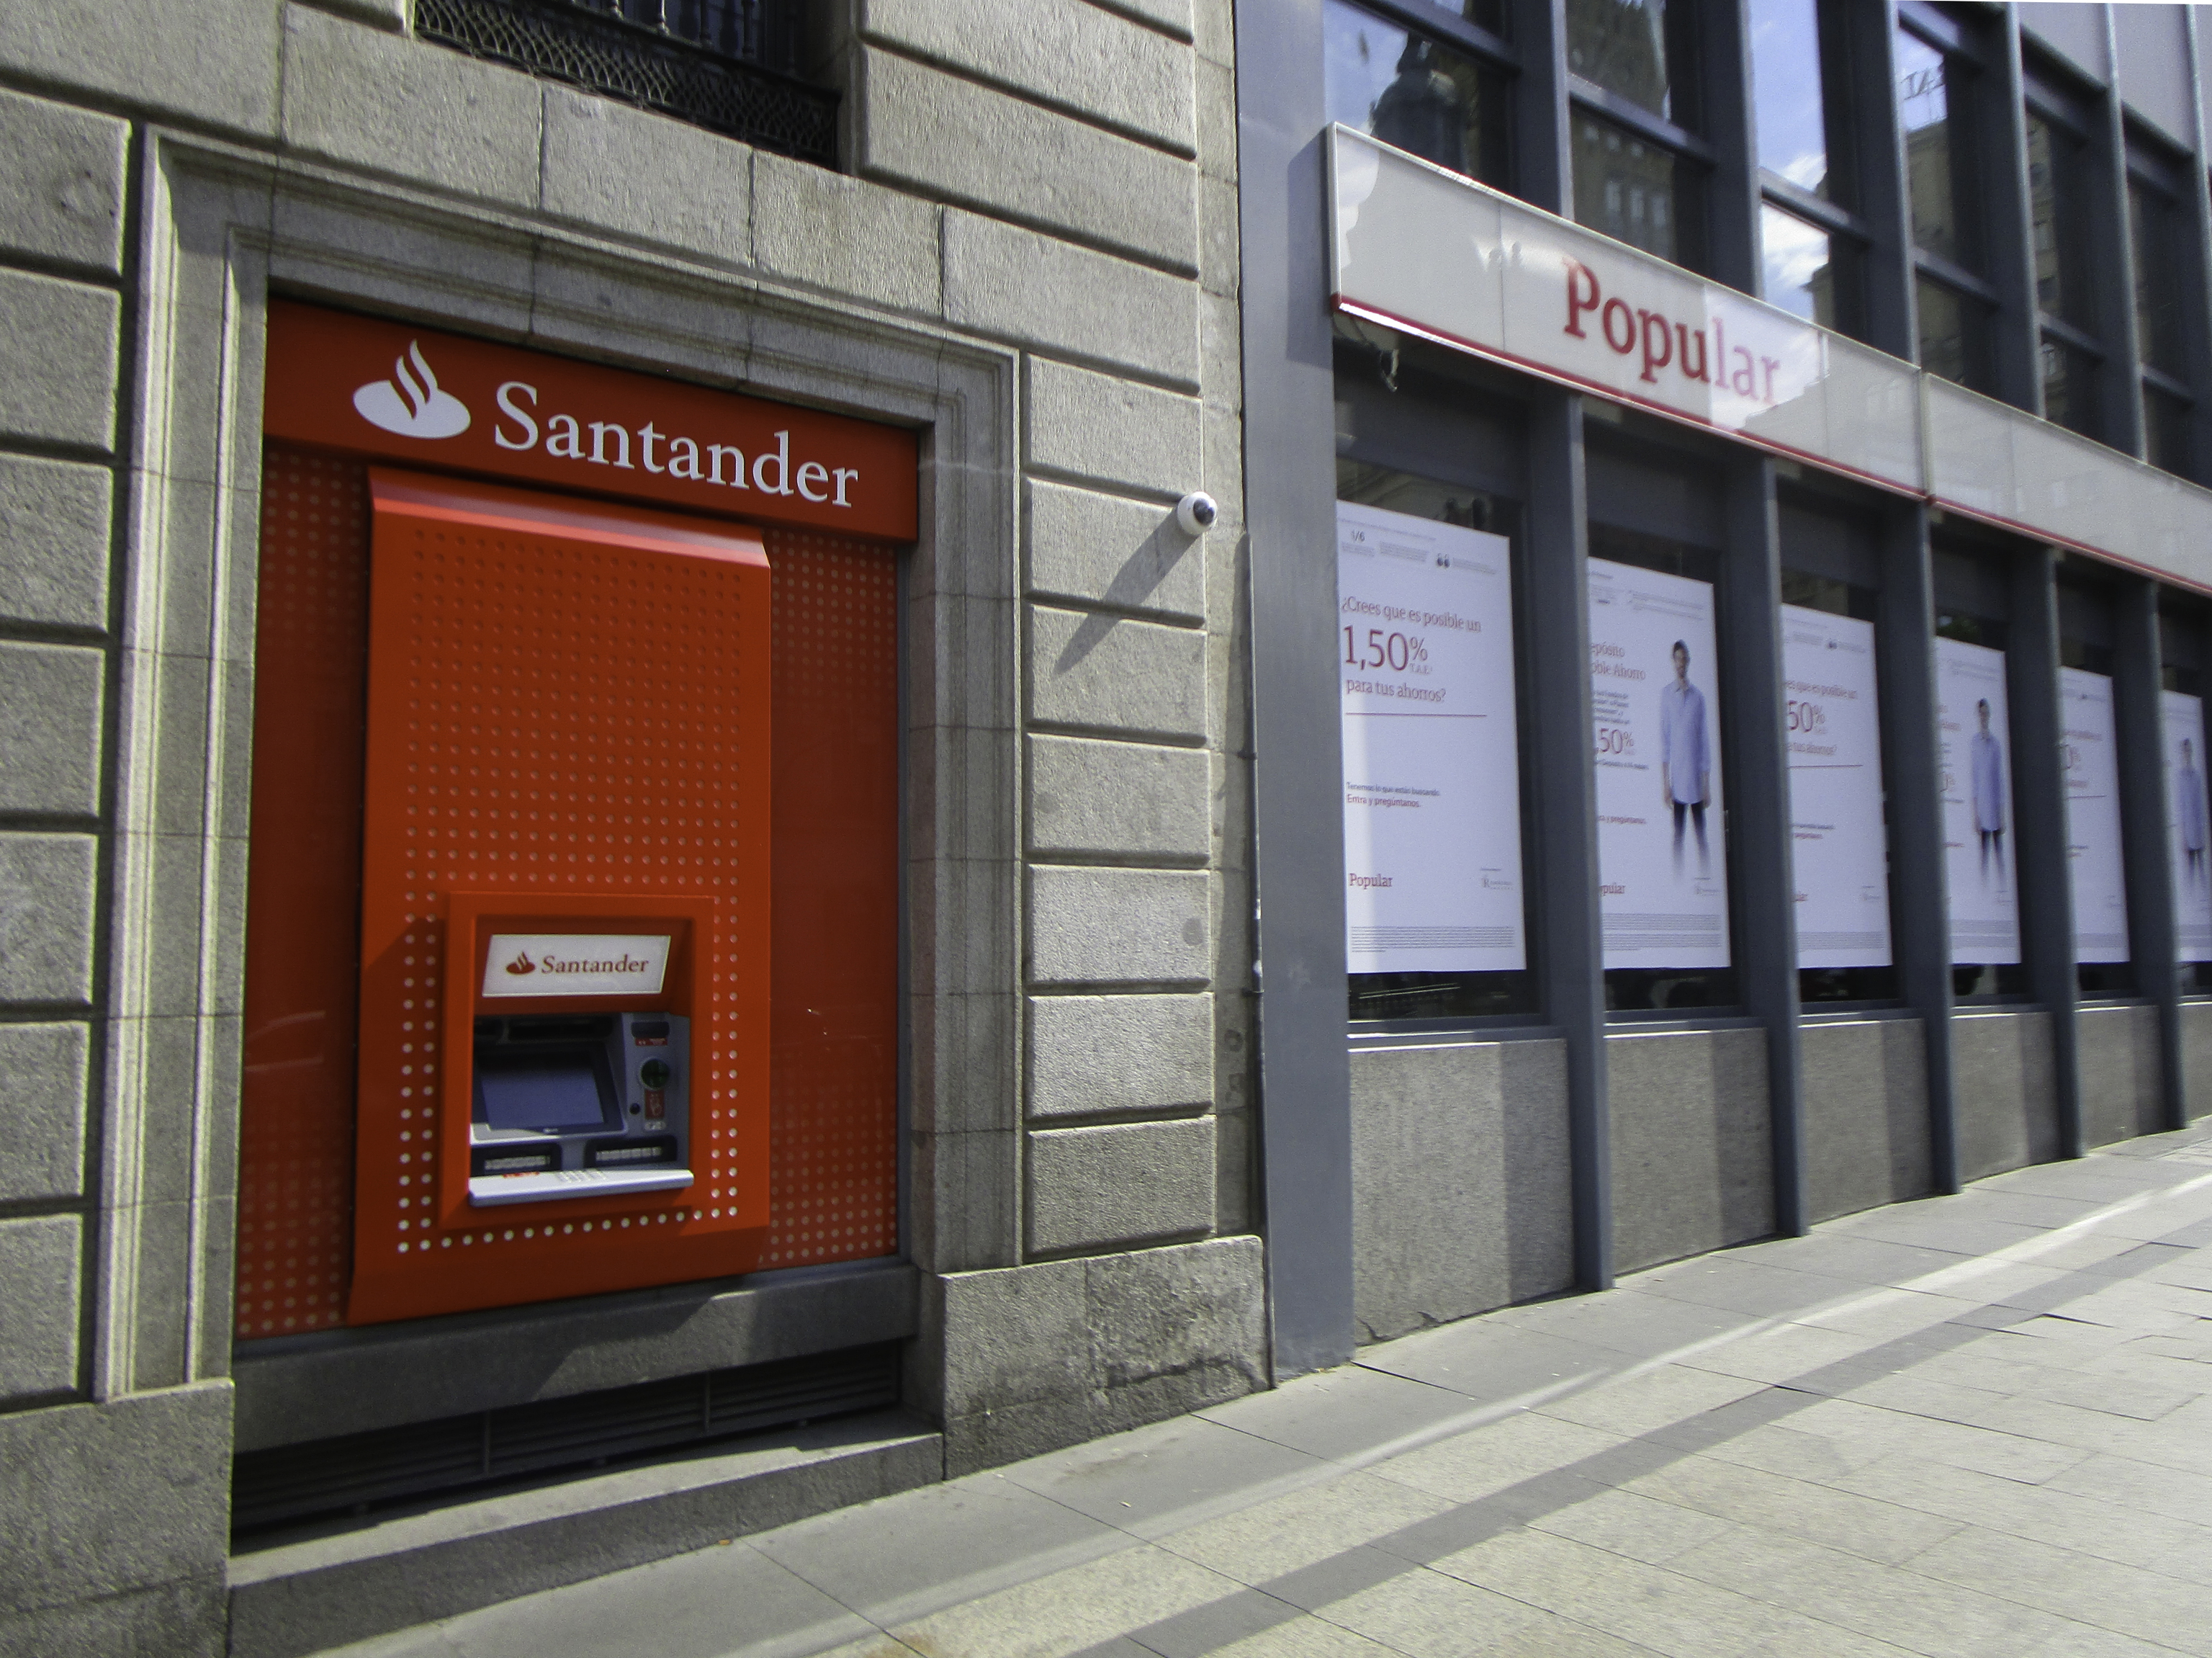 Oficina del Banco Popular junto a un cajero del Santander.